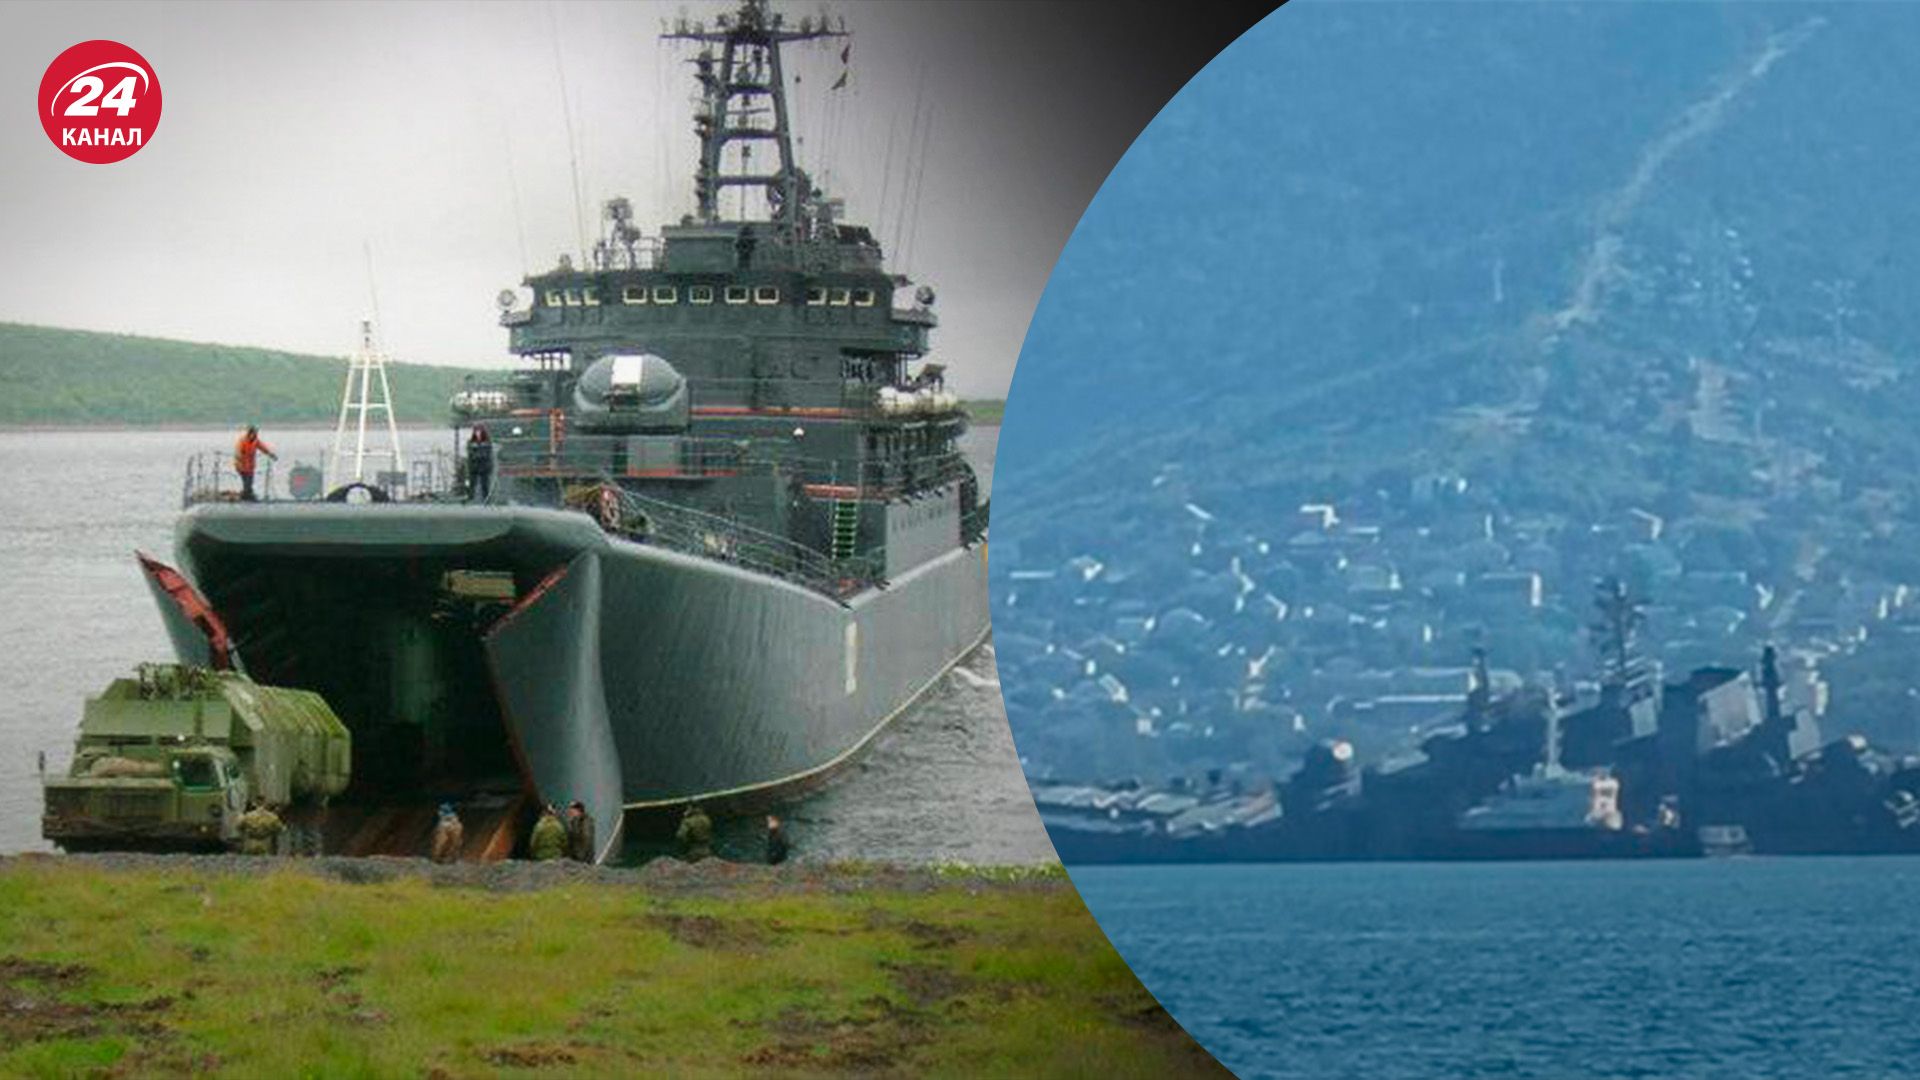 Атака на Оленегорский горняк - какая роль БДК в Черноморском флоте - 24 Канал